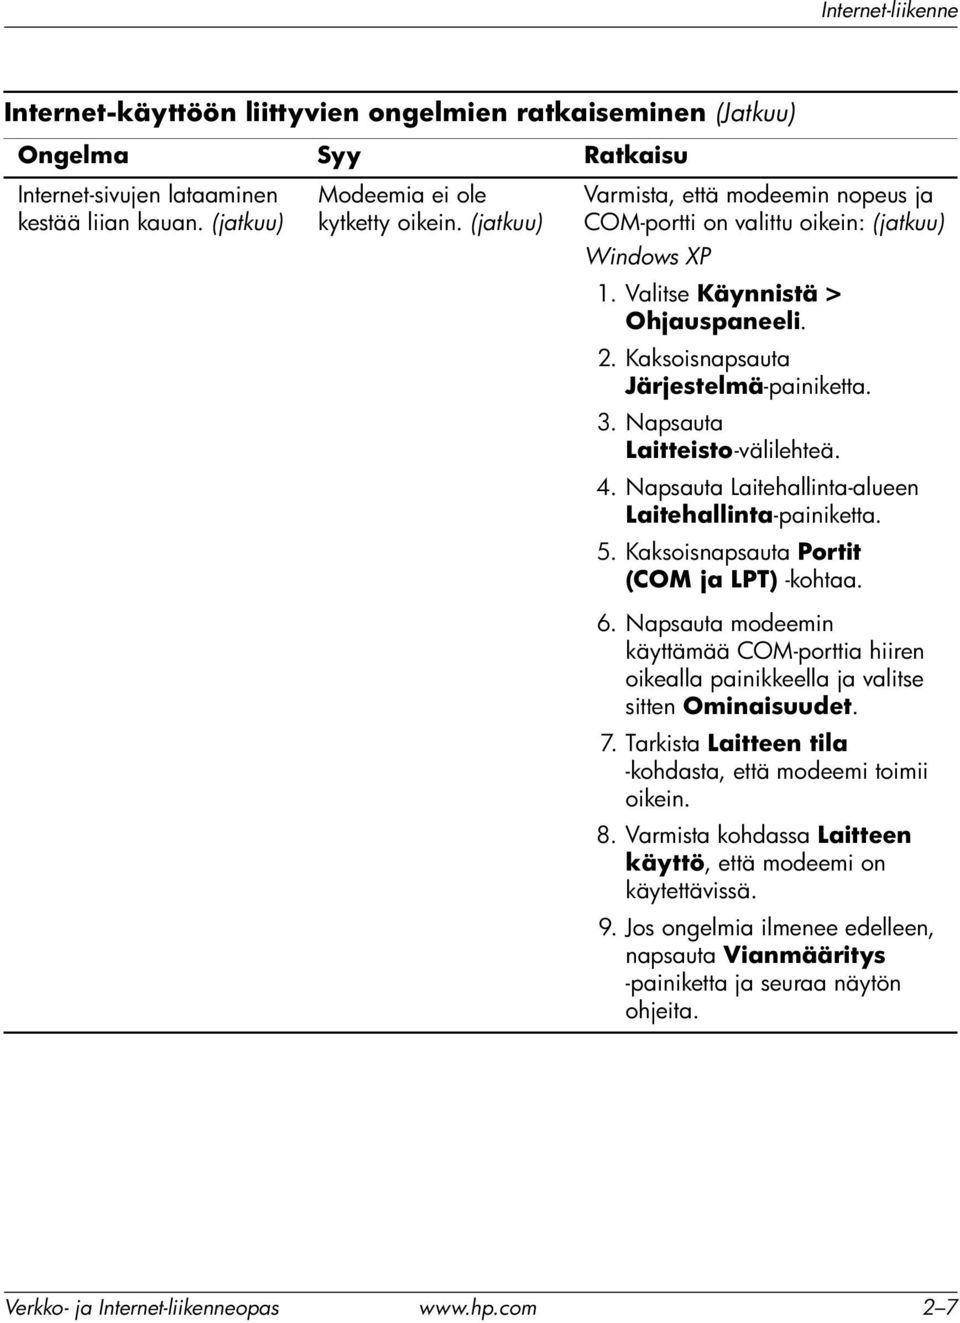 Napsauta Laitteisto-välilehteä. 4. Napsauta Laitehallinta-alueen Laitehallinta-painiketta. 5. Kaksoisnapsauta Portit (COM ja LPT) -kohtaa. 6.